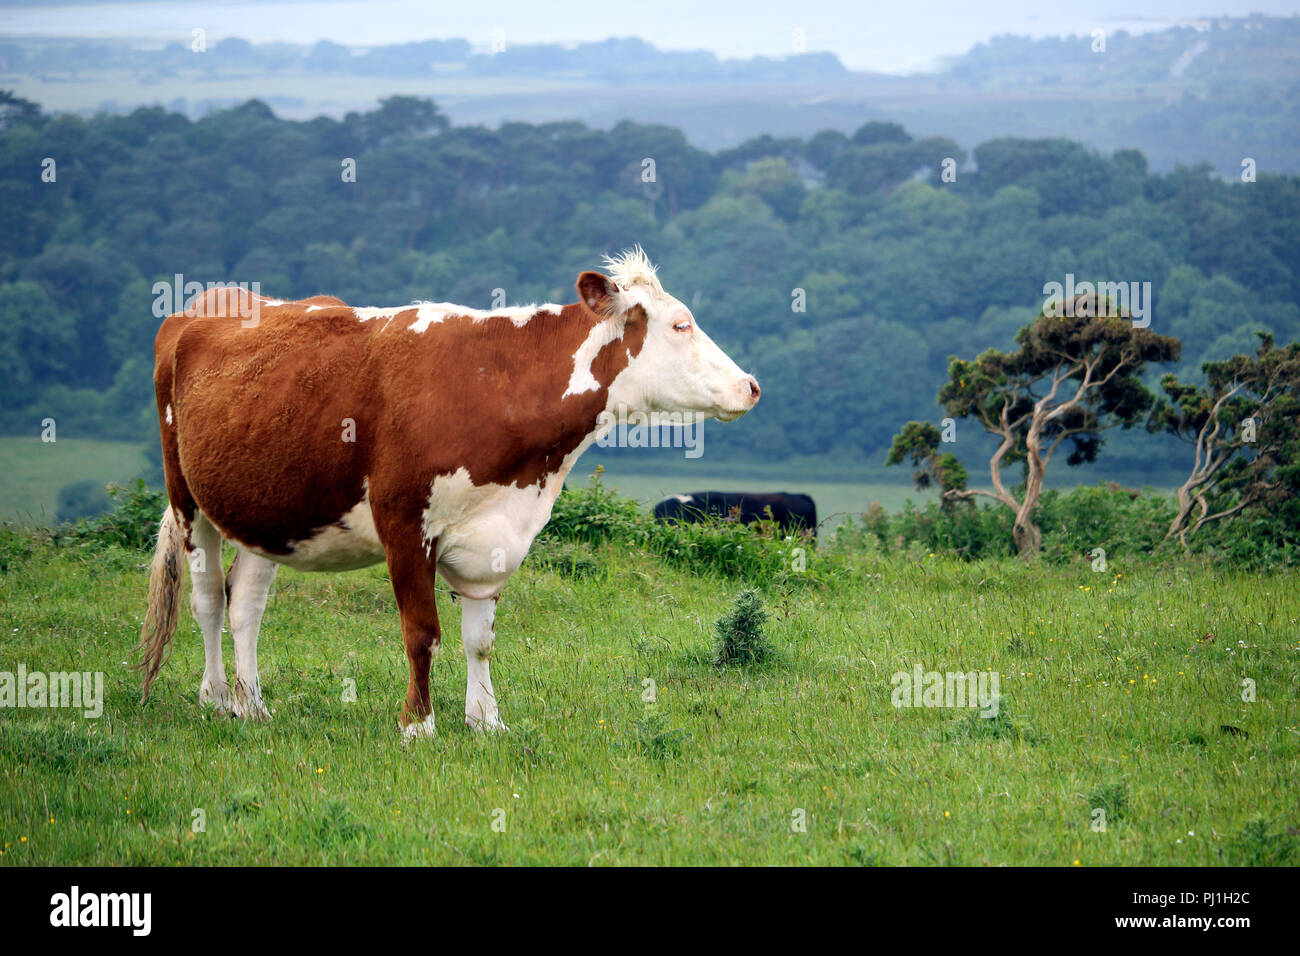 Vache Hereford et autres bovins d'une colline, une colline avec champ de pâturage en forêt fond brumeux Banque D'Images